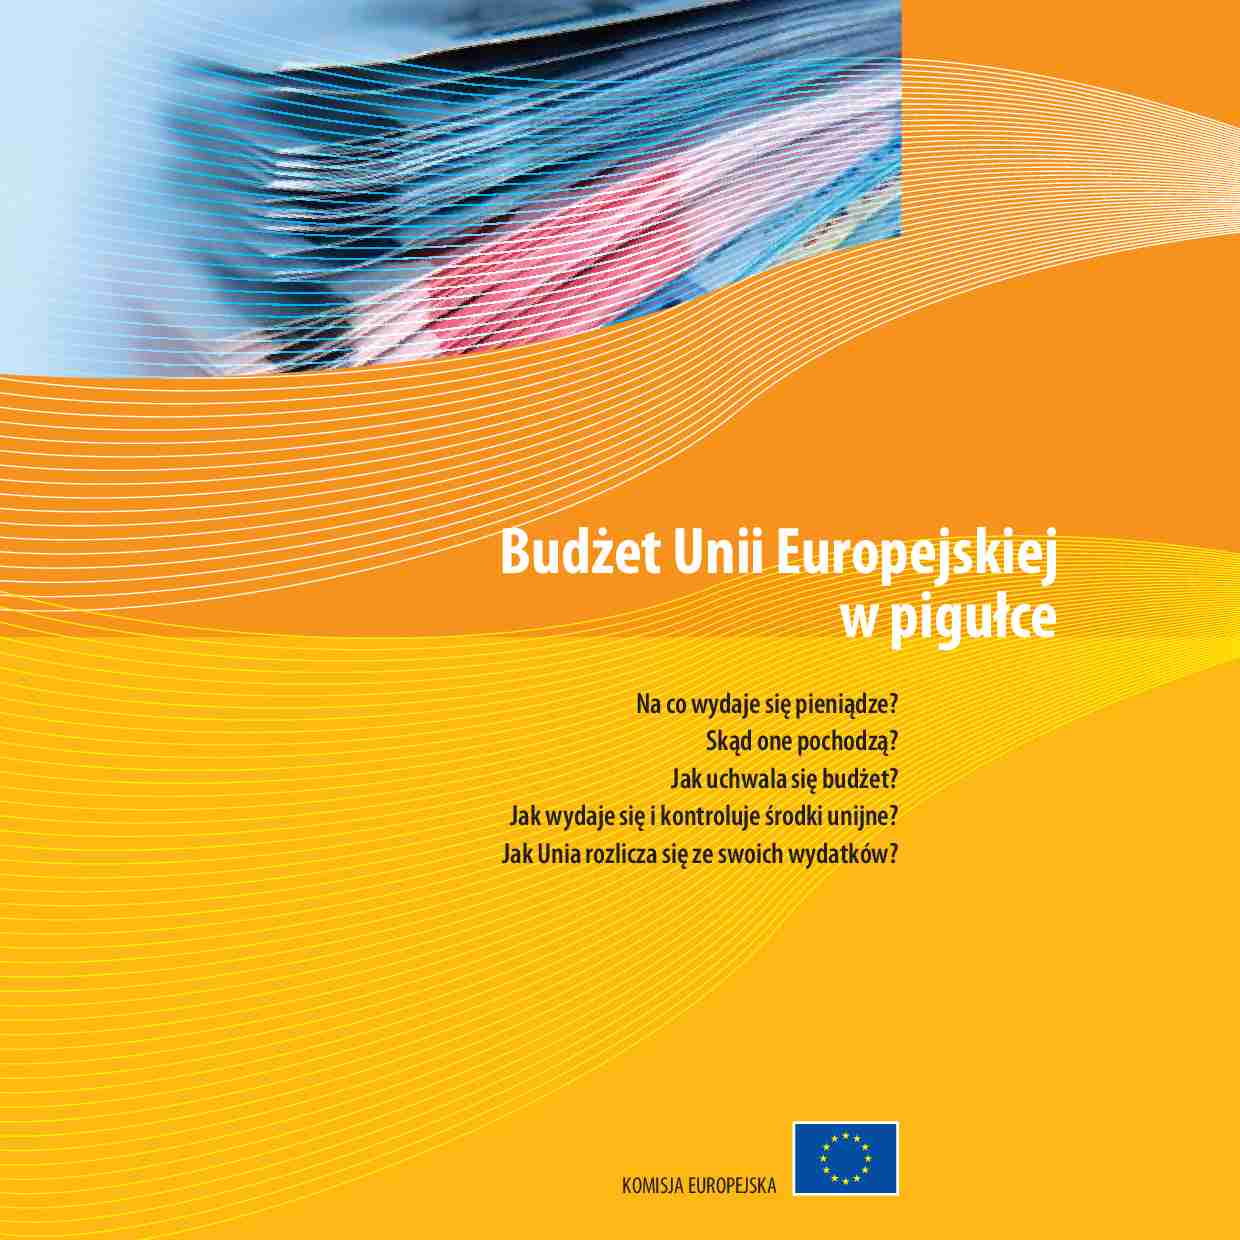 Budżet Unii Europejskiej - wzrost gospodarczy i zatrudnienie - strona 1